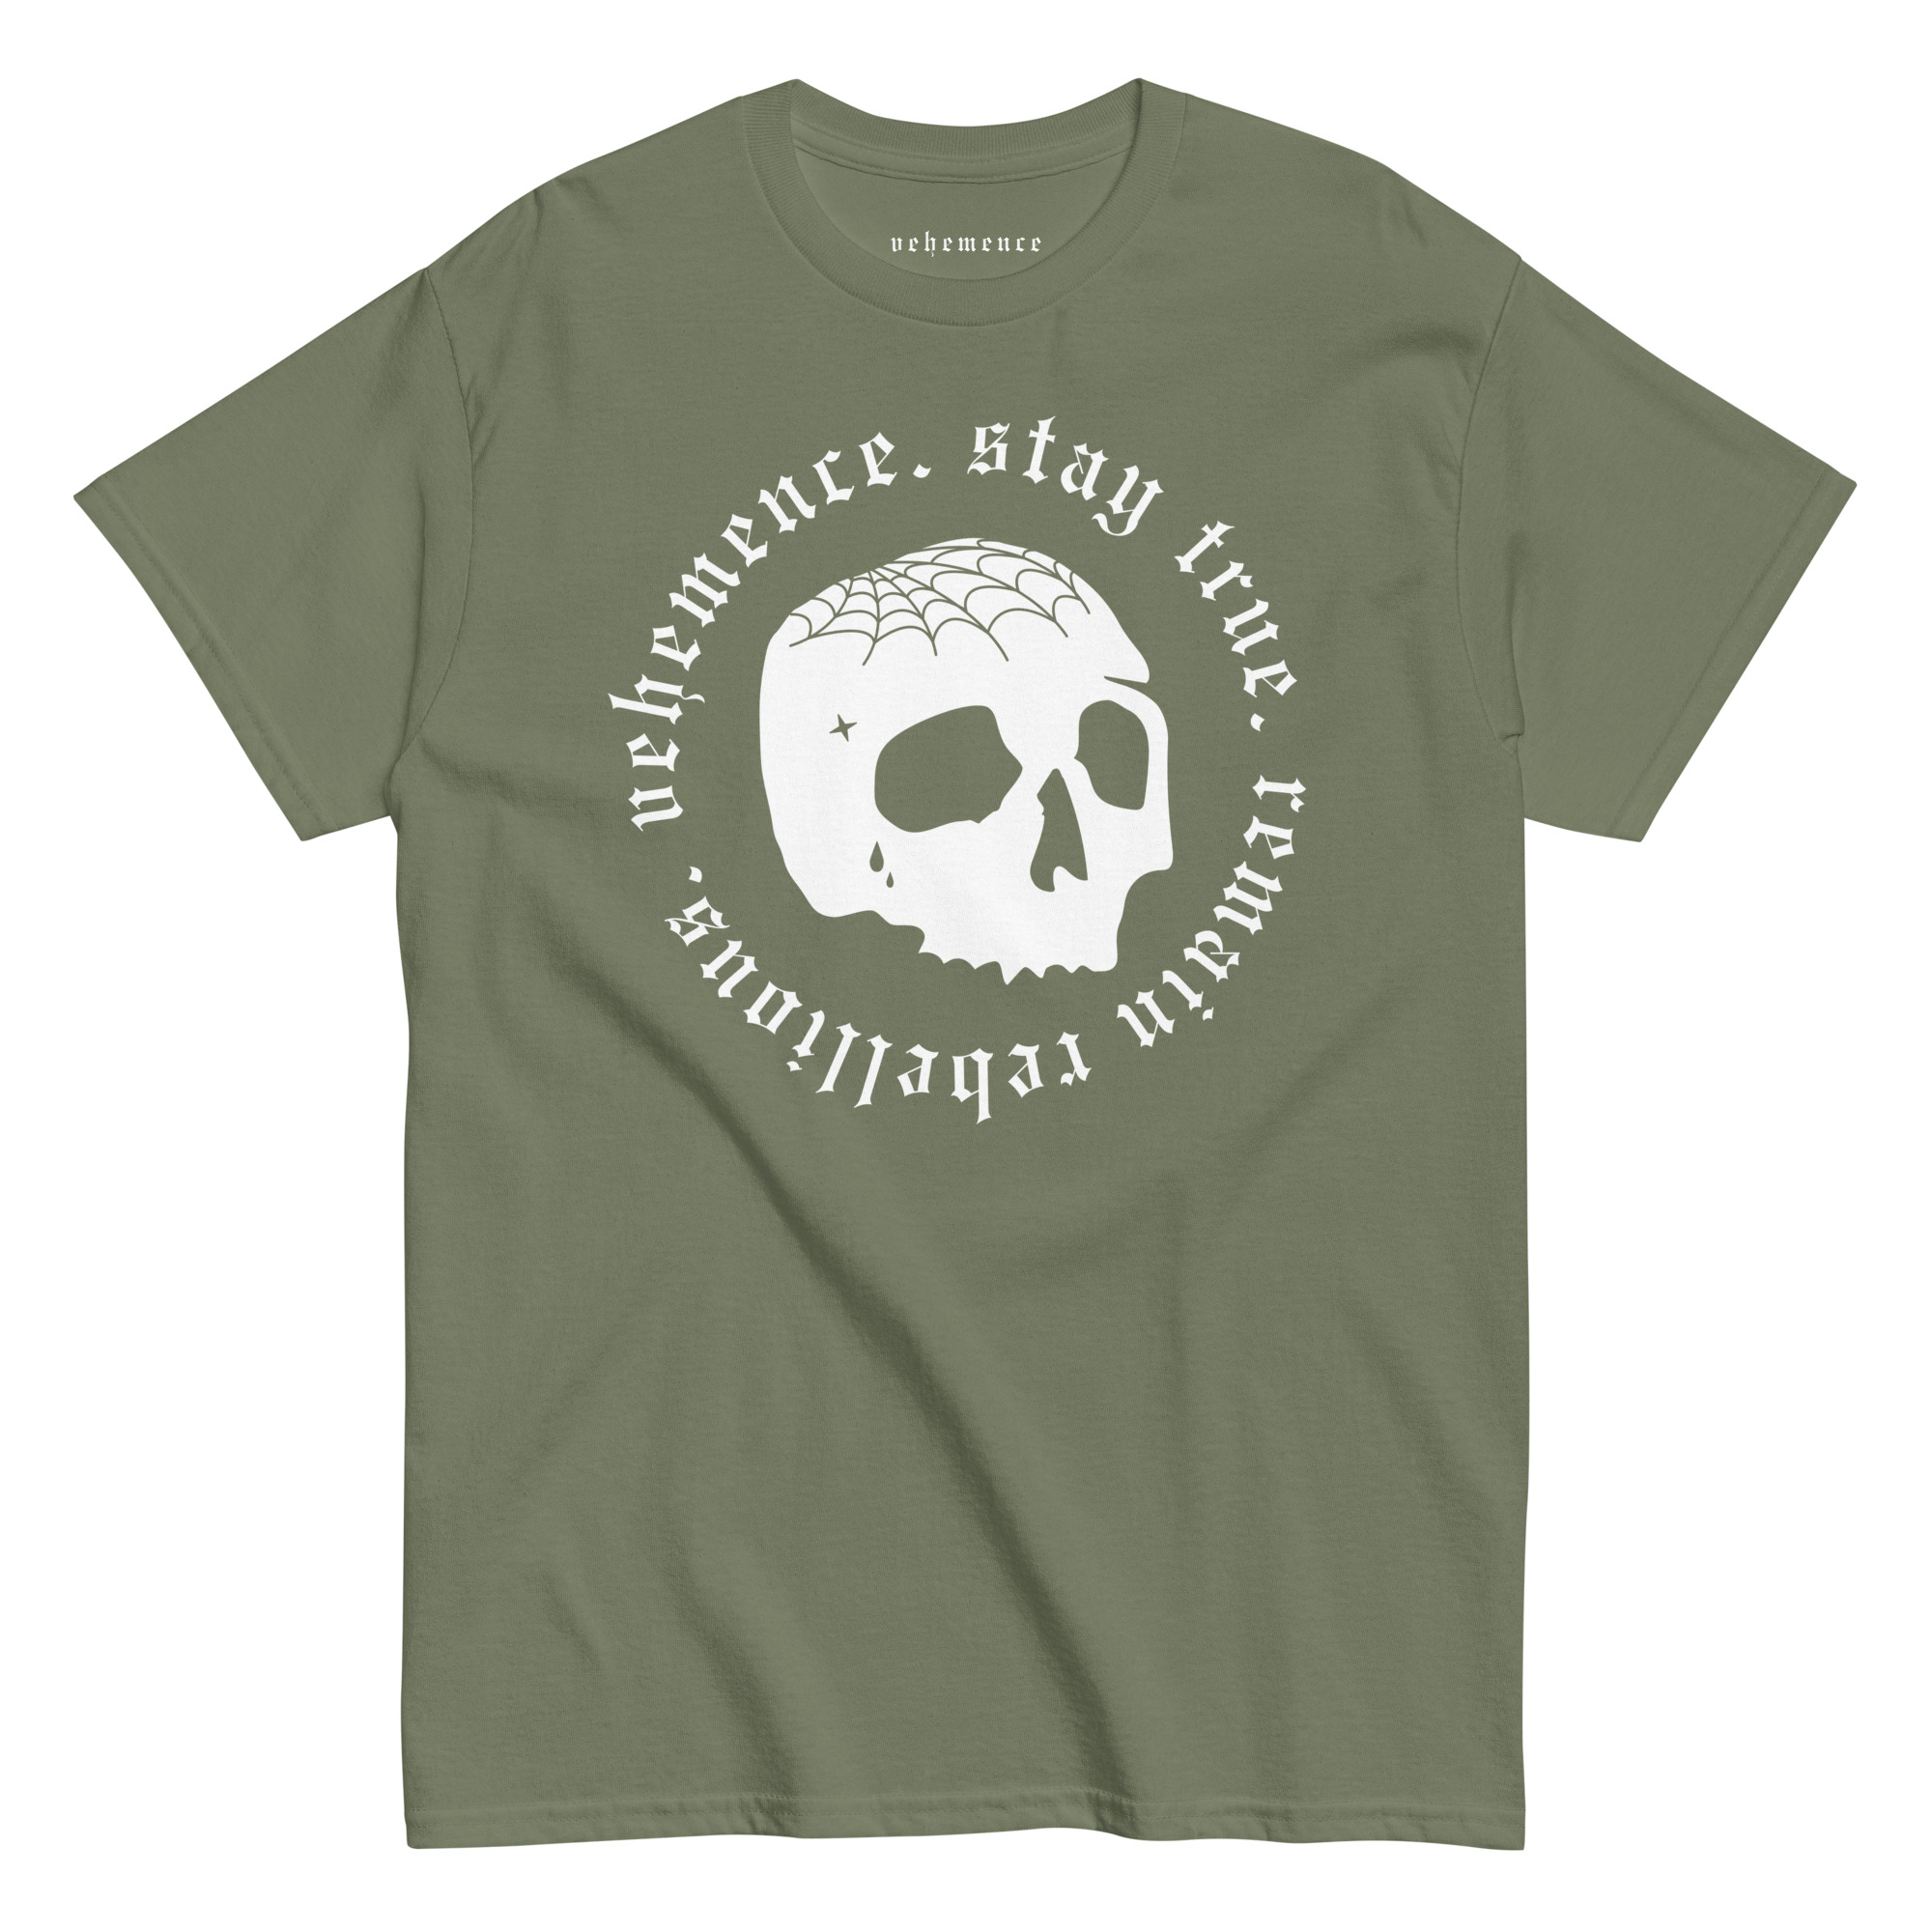 Stay true cranium tattoo t-shirt – green